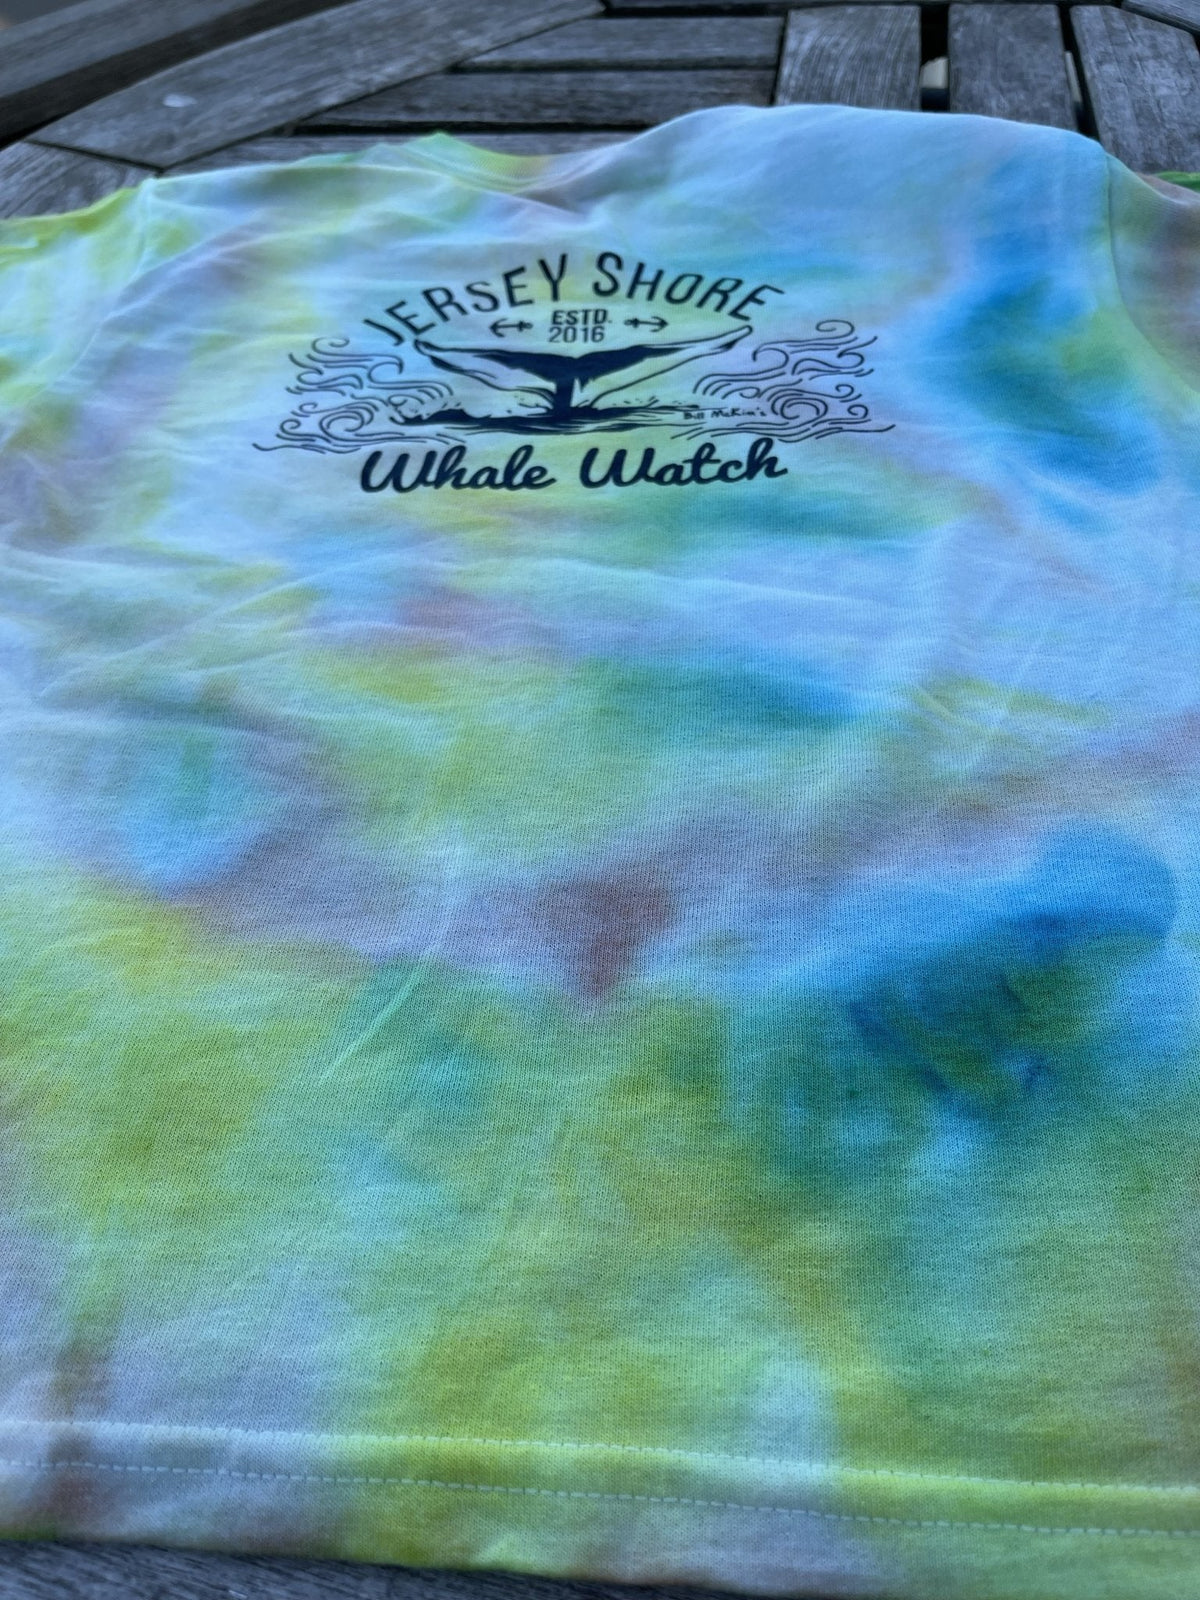 Unique Tie Dye Jersey Shore Whale Watch T-shirt Original Design Bill McKim Photography Large Tie Dye 